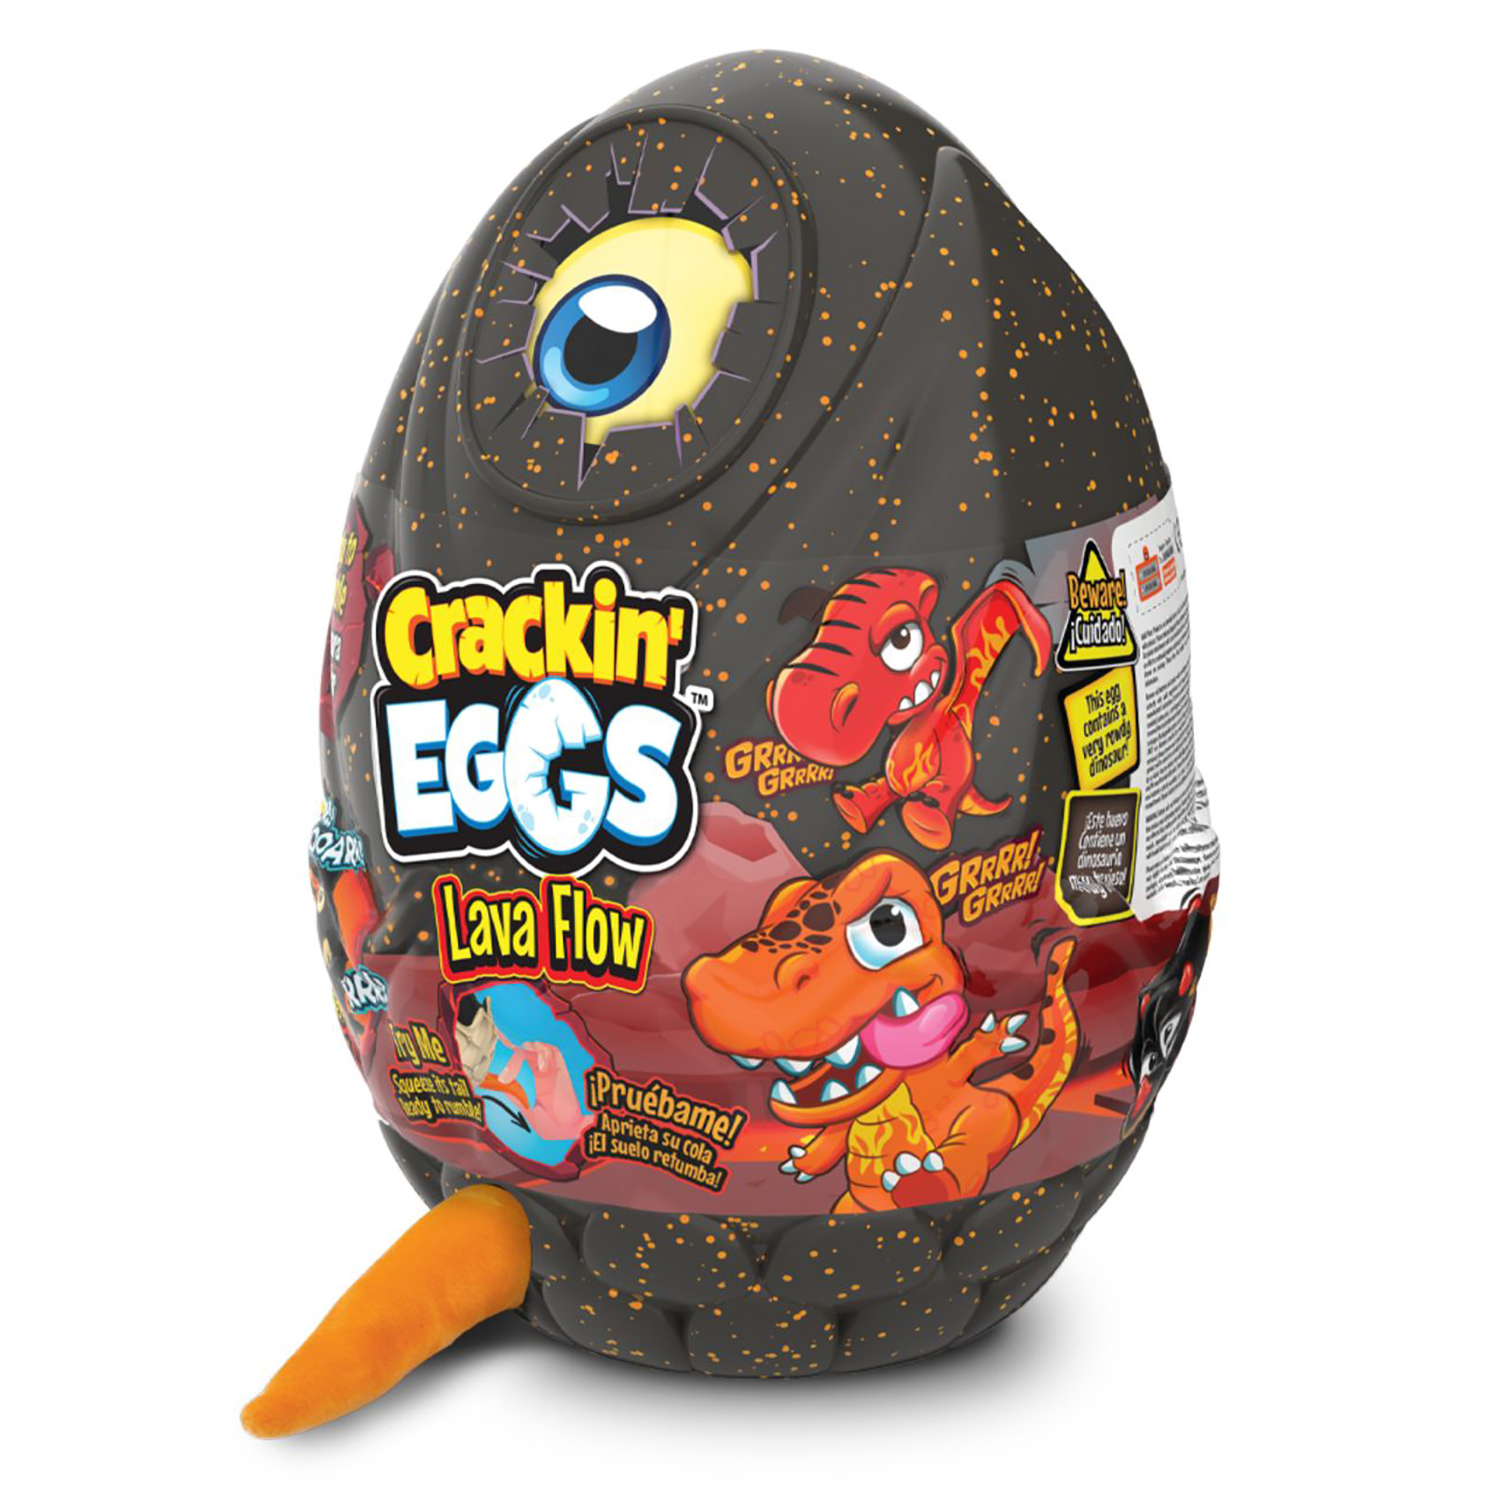 Мягкая игрушка Crackin' Eggs Динозавр оранжевый в яйце, серия Лава, 22 см мягкая игрушка crackin eggs динозавр оранжевый в яйце серия лава 22 см